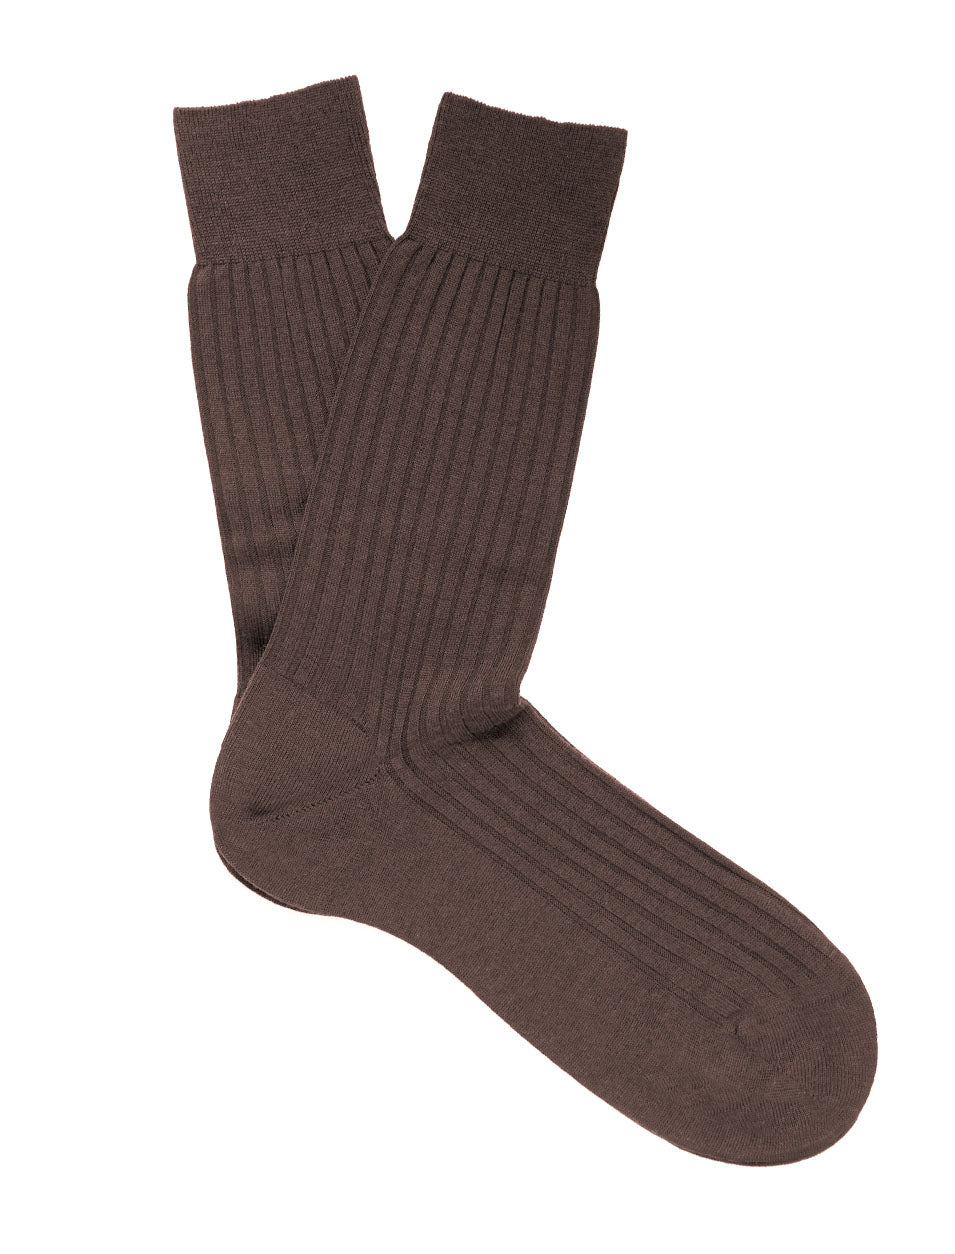 PANTHERELLA Rutherford 5X3 Rib Merino Royale Wool Men's Socks In Taupe